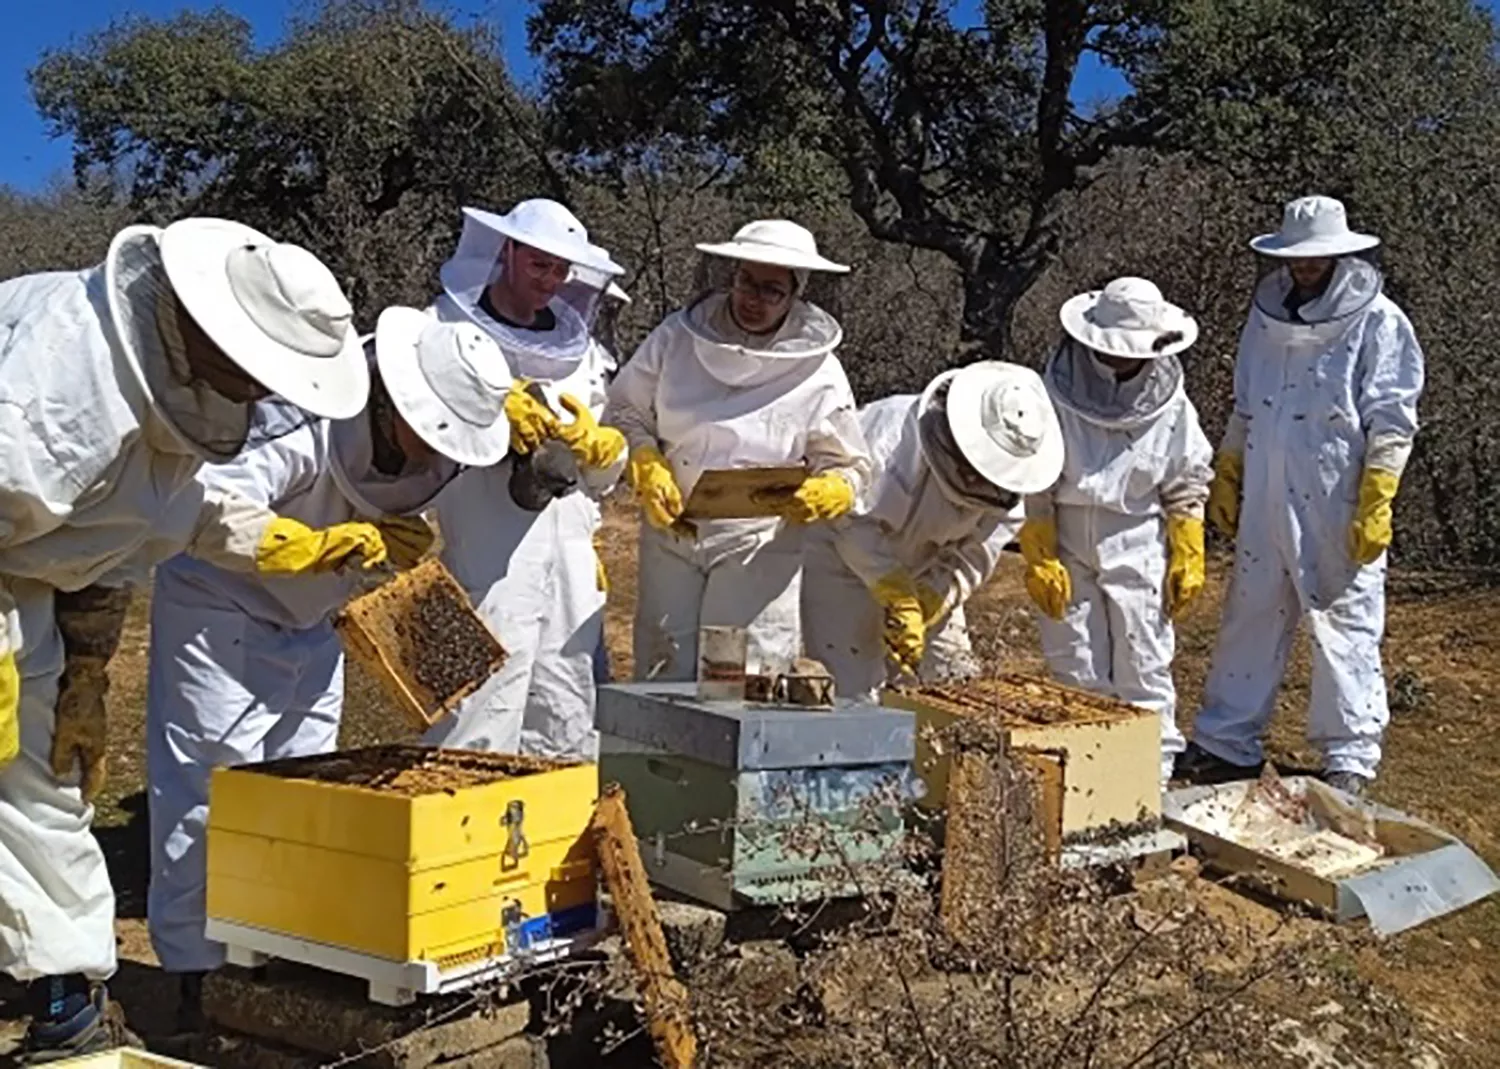 La Diputación de León forma a 16 personas desempleadas en trabajos forestales, apicultura, viveros y jardinería